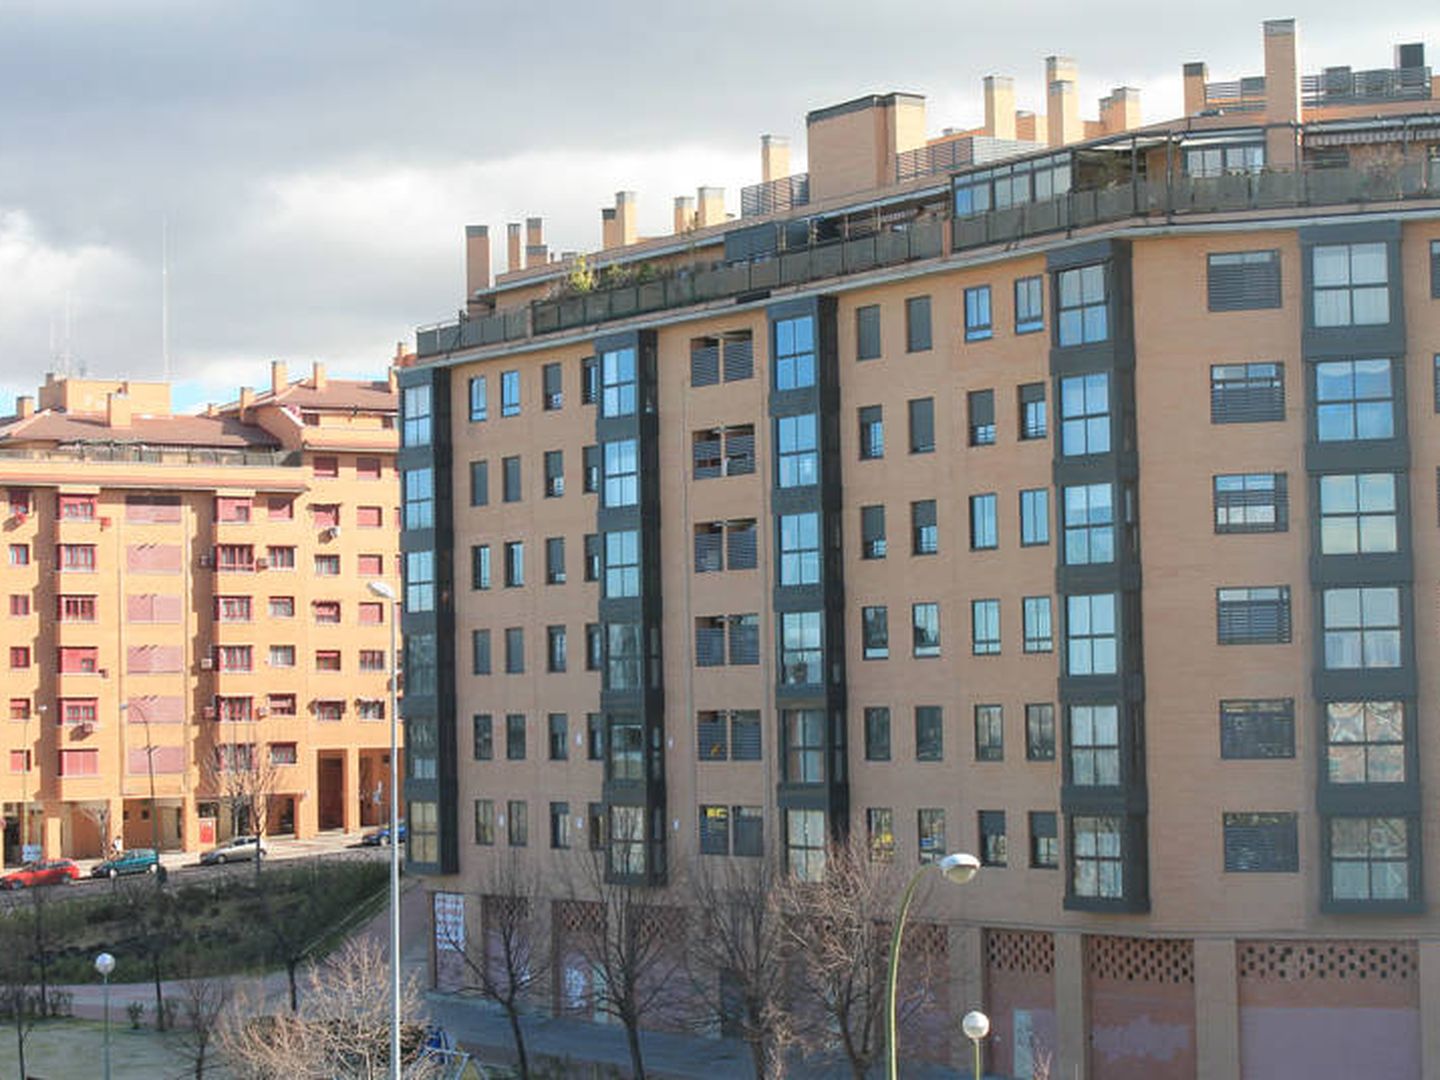 Viviendas en alquiler en Madrid, propiedad de un fondo de inversión.